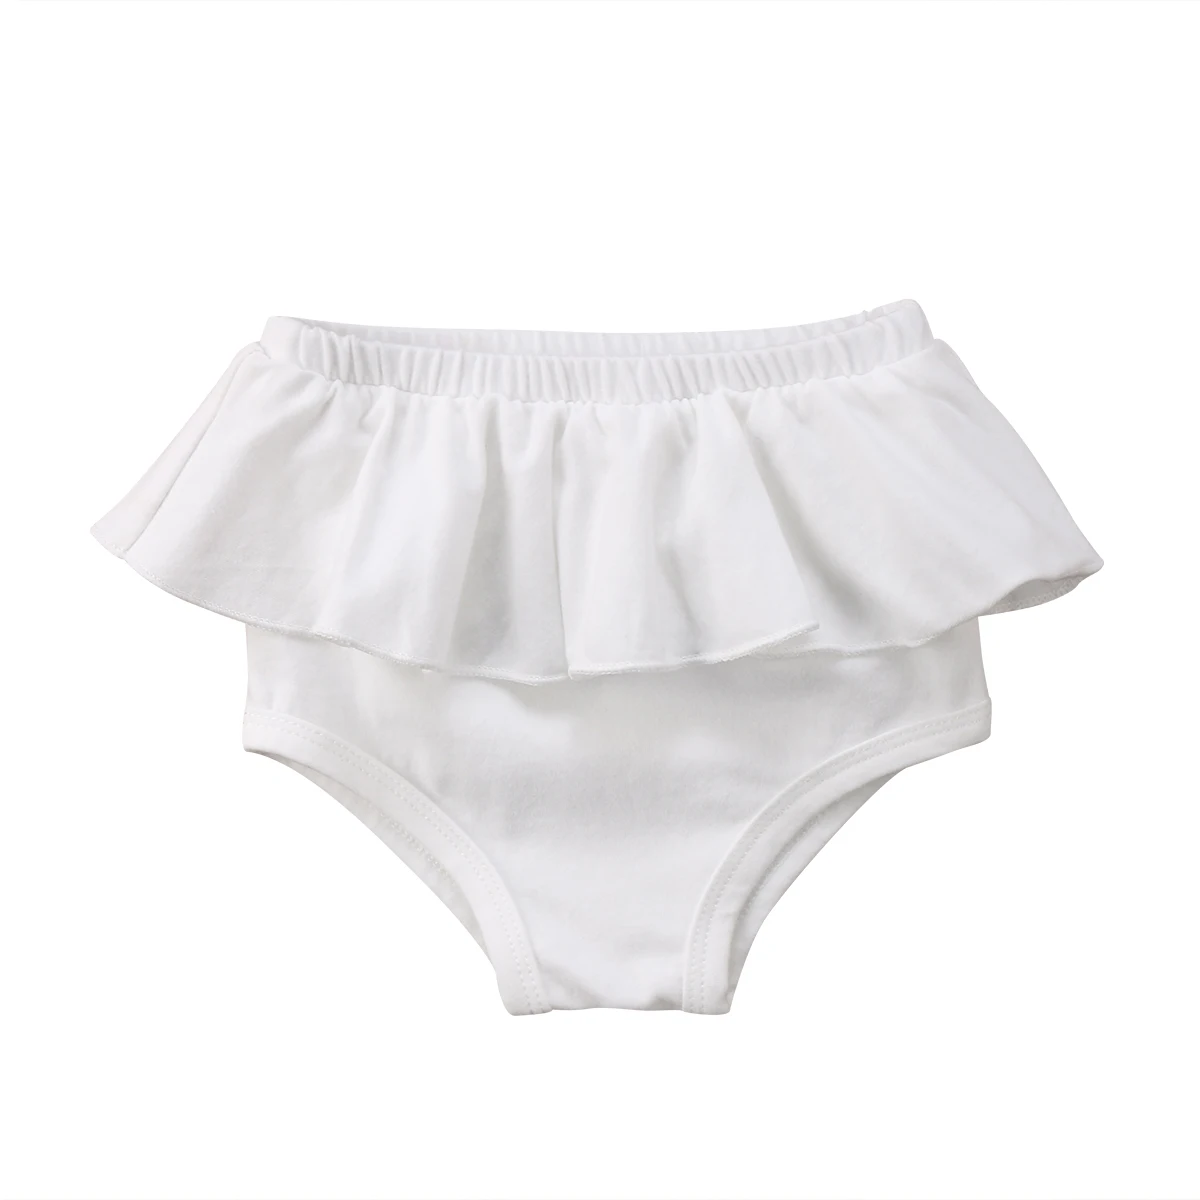 Штаны для девочек Одежда для новорожденных Одежда для детей и малышей для девочек Emmababy летние однотонные повседневные штаны-шаровары плавки ПП шаровары трусики на возраст от 0 до 24 месяцев - Цвет: Белый